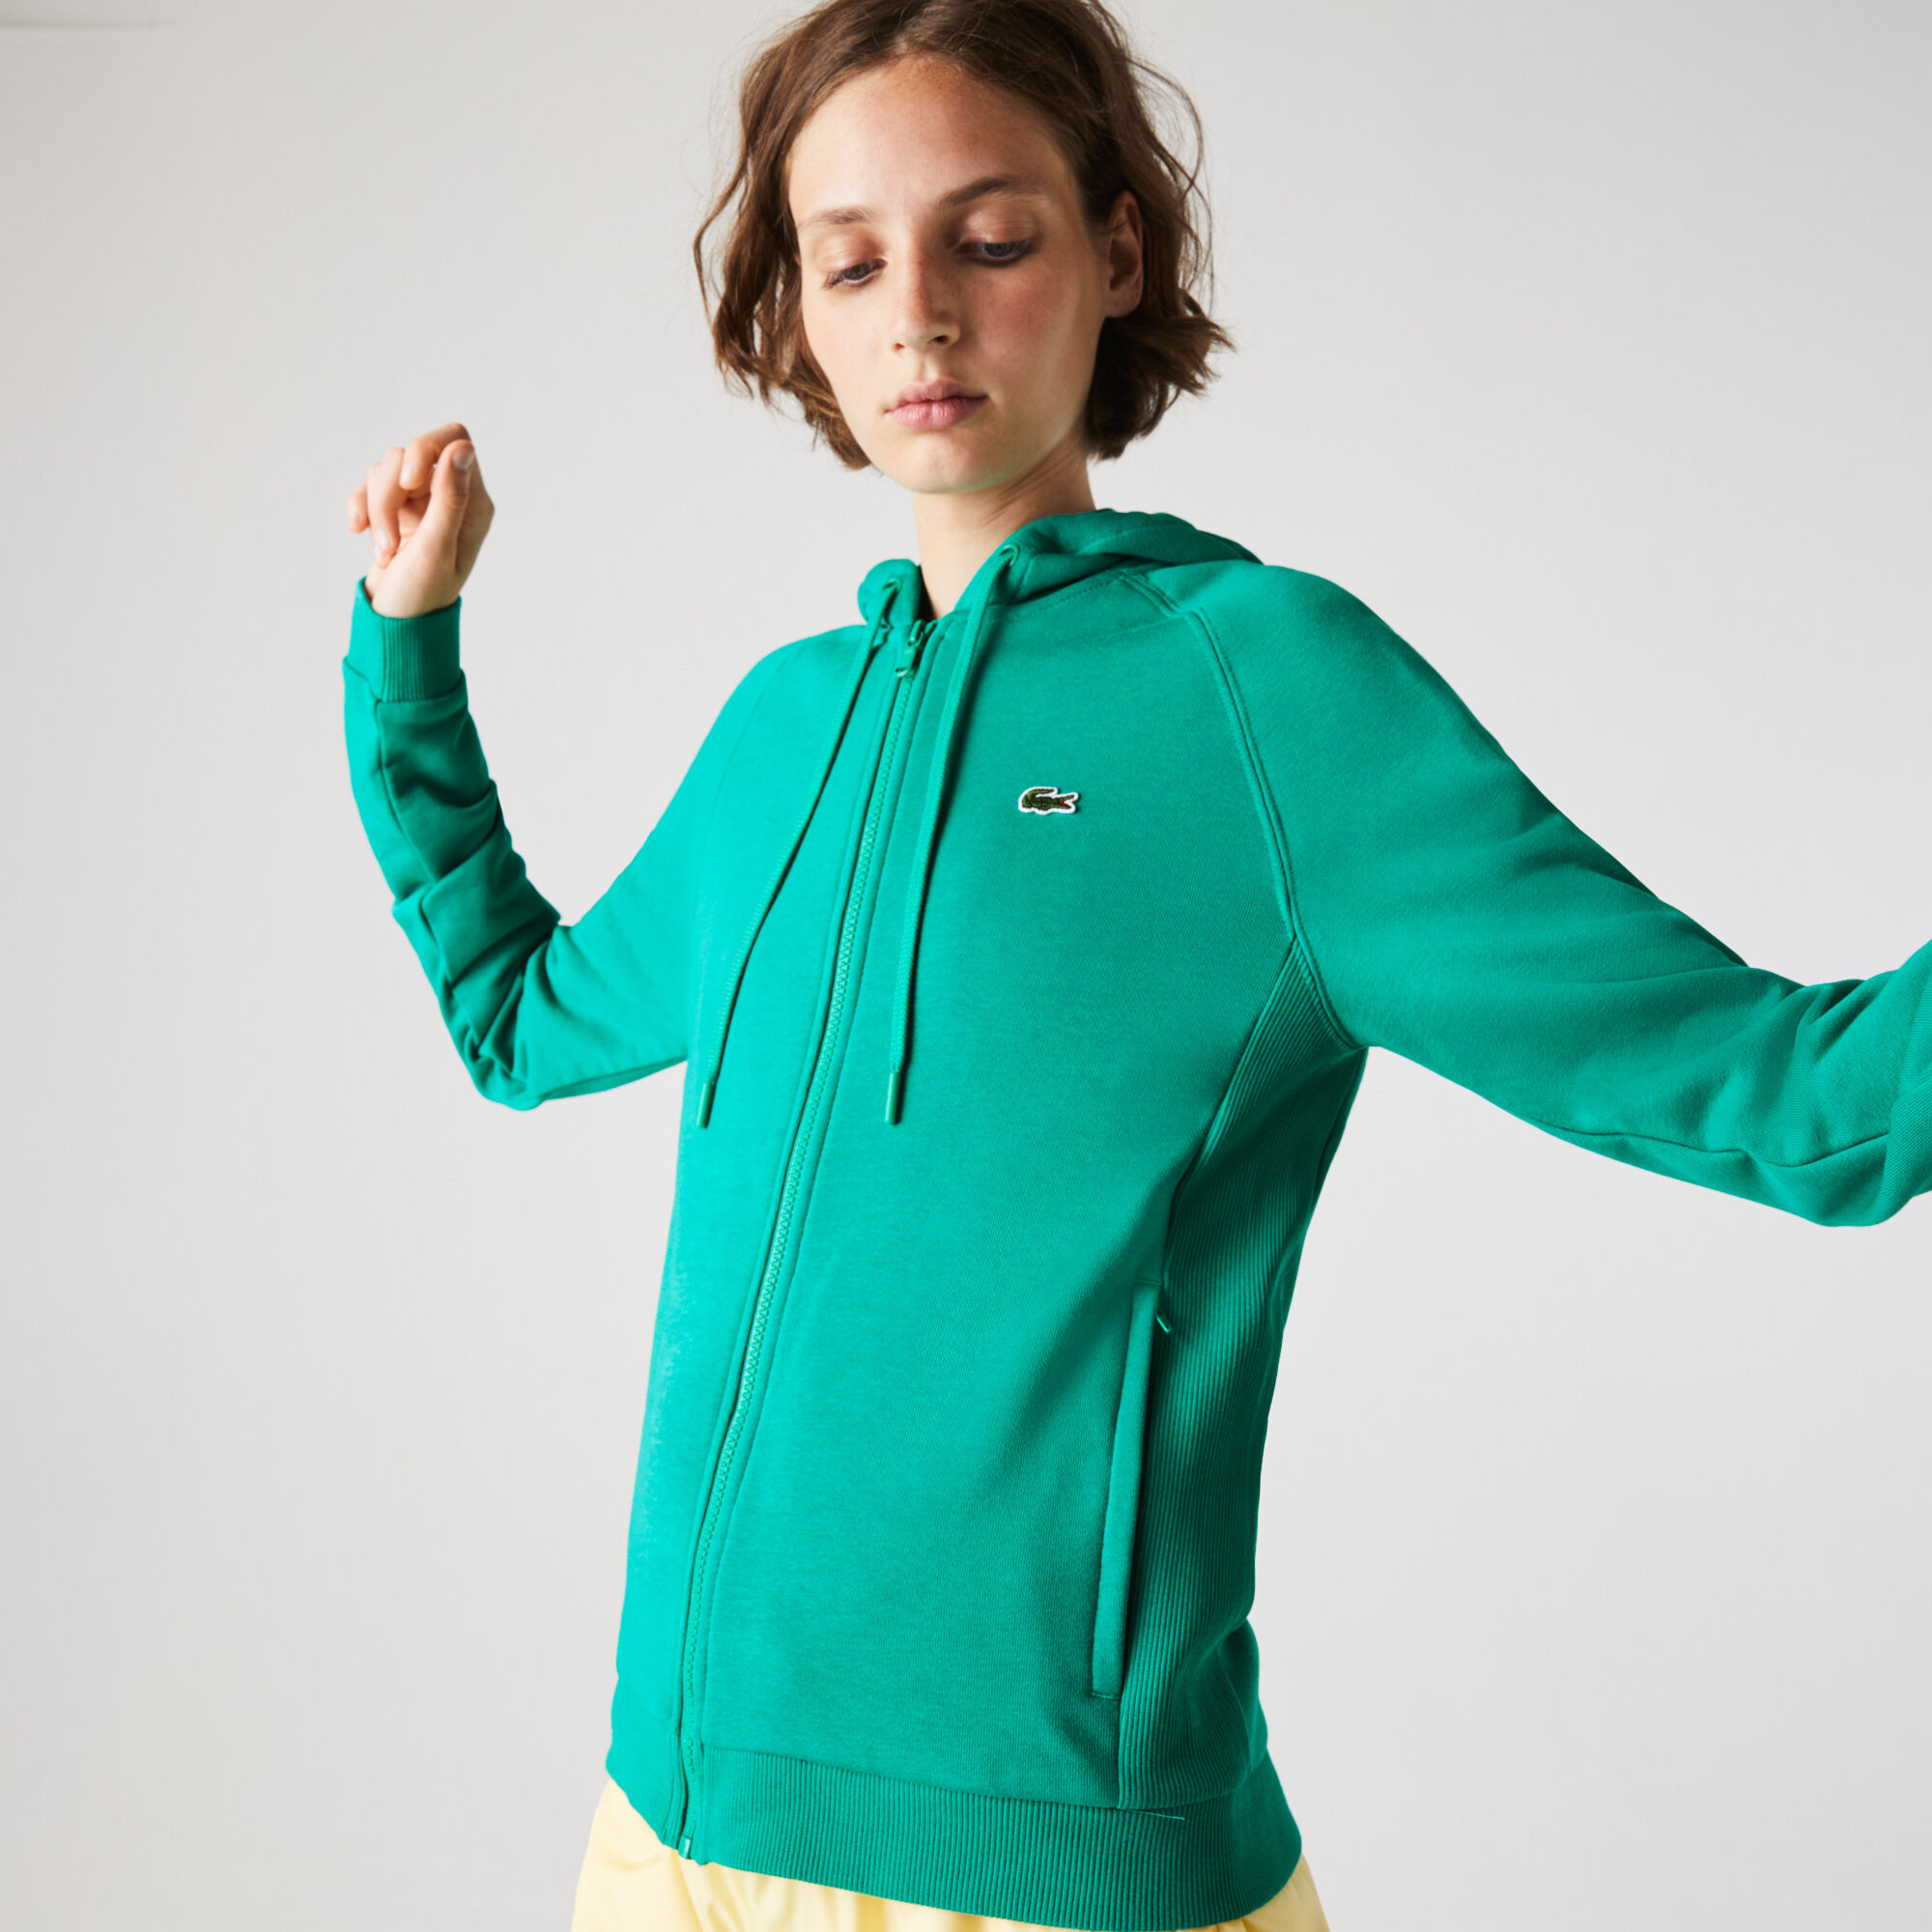 Women's Lacoste SPORT Hooded Fleece Zip Tennis Sweatshirt